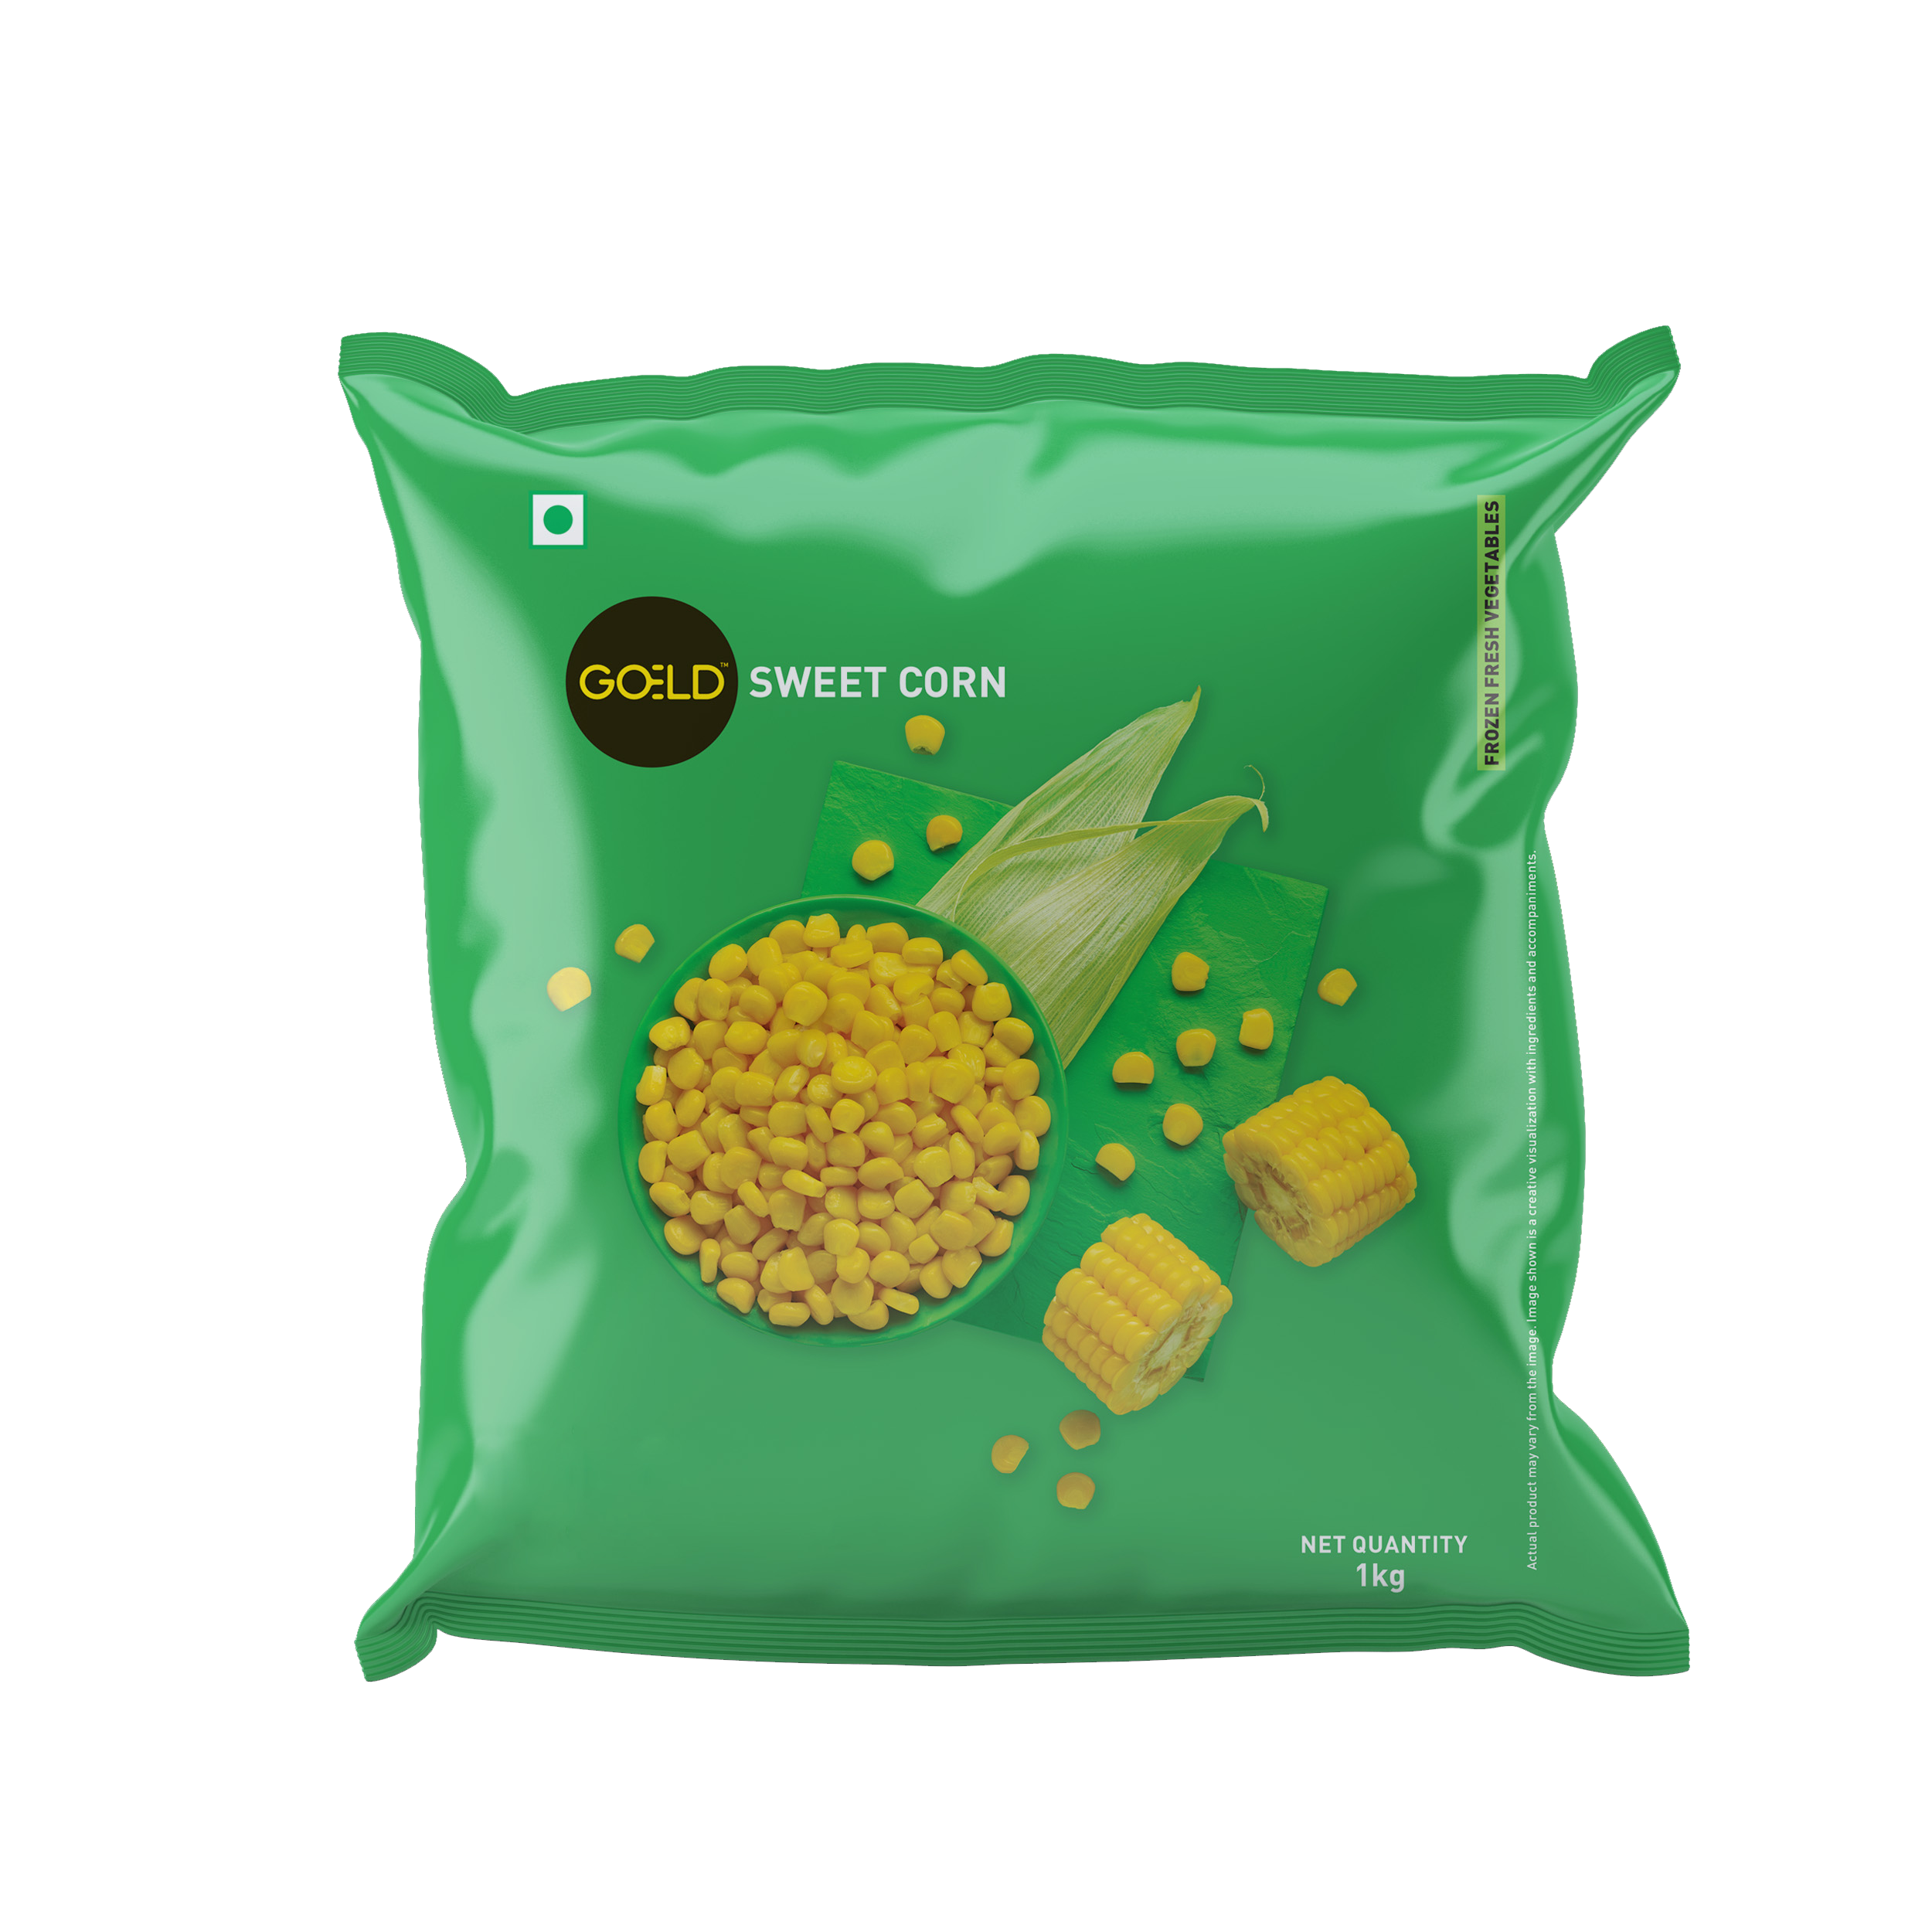 Goeld Sweet Corn Packaging